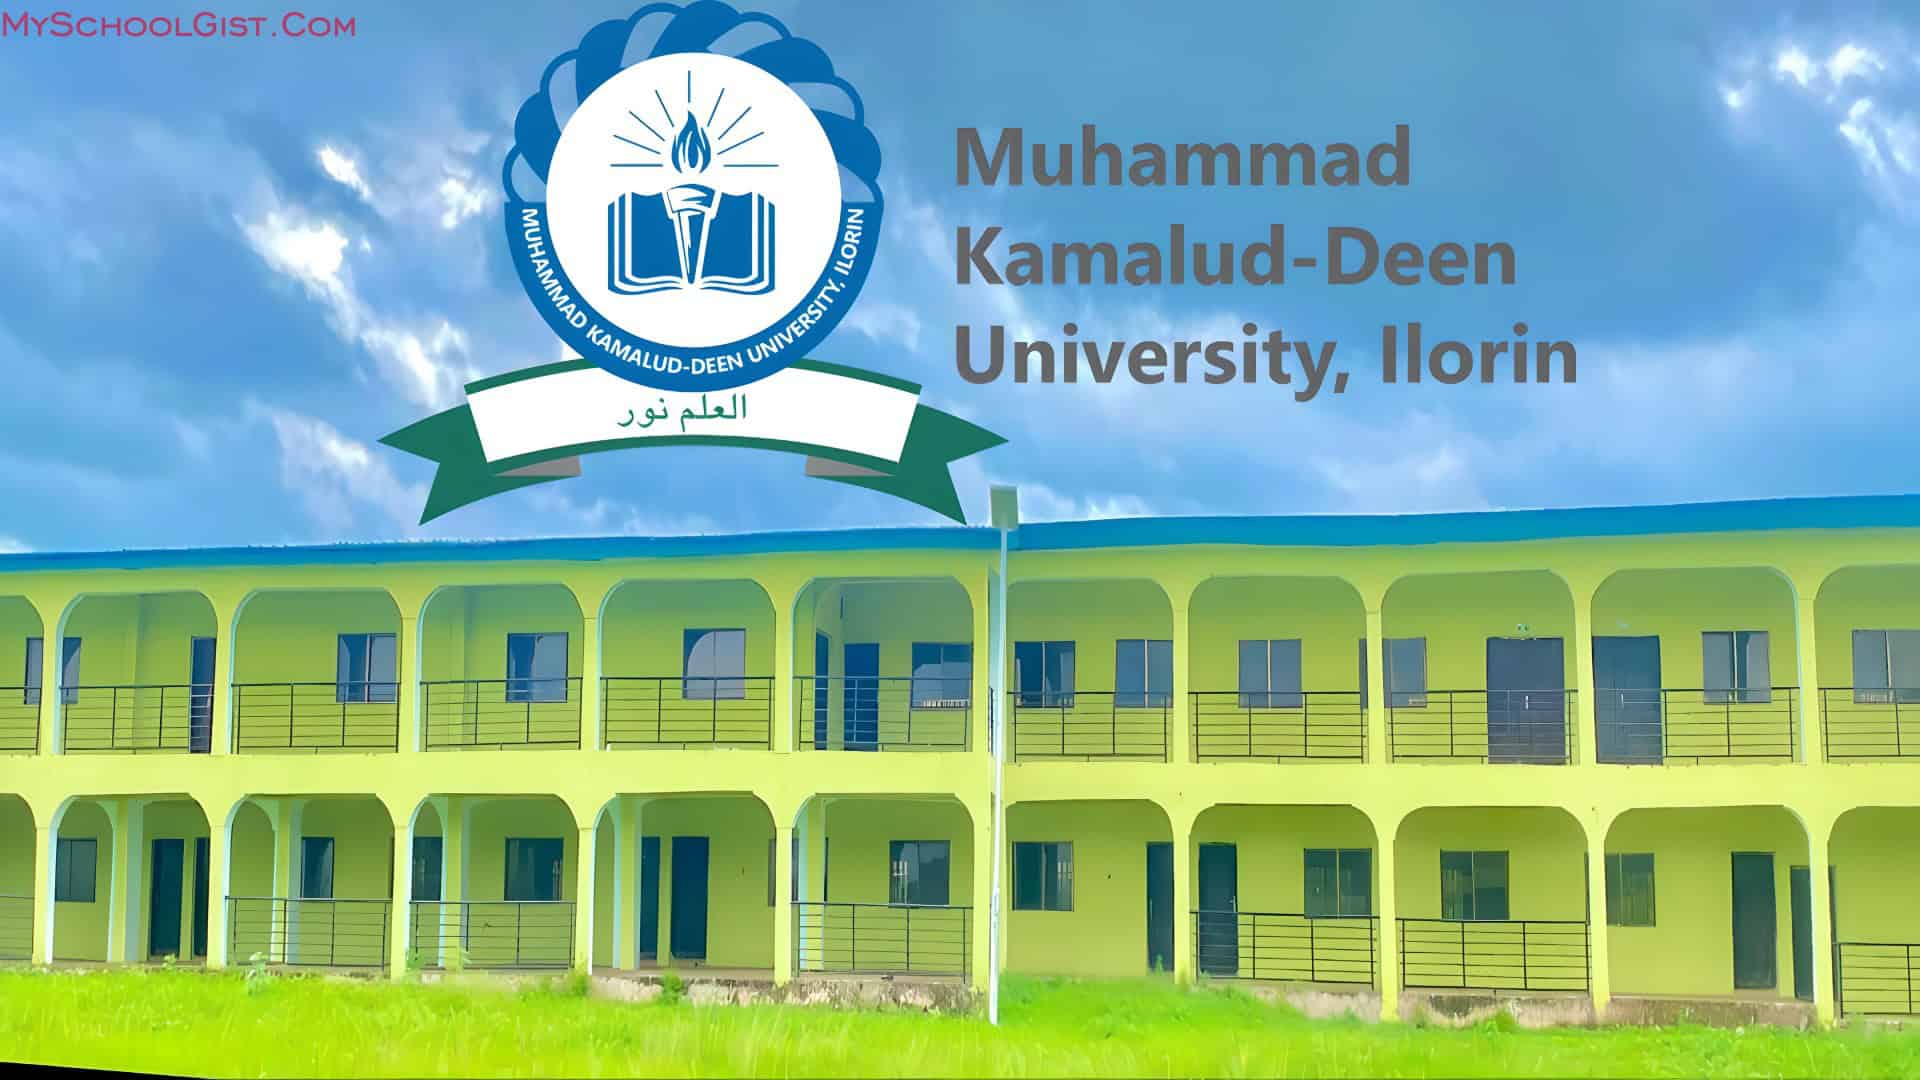 Muhammad Kamalud-deen University (MKU) Matriculation Ceremony